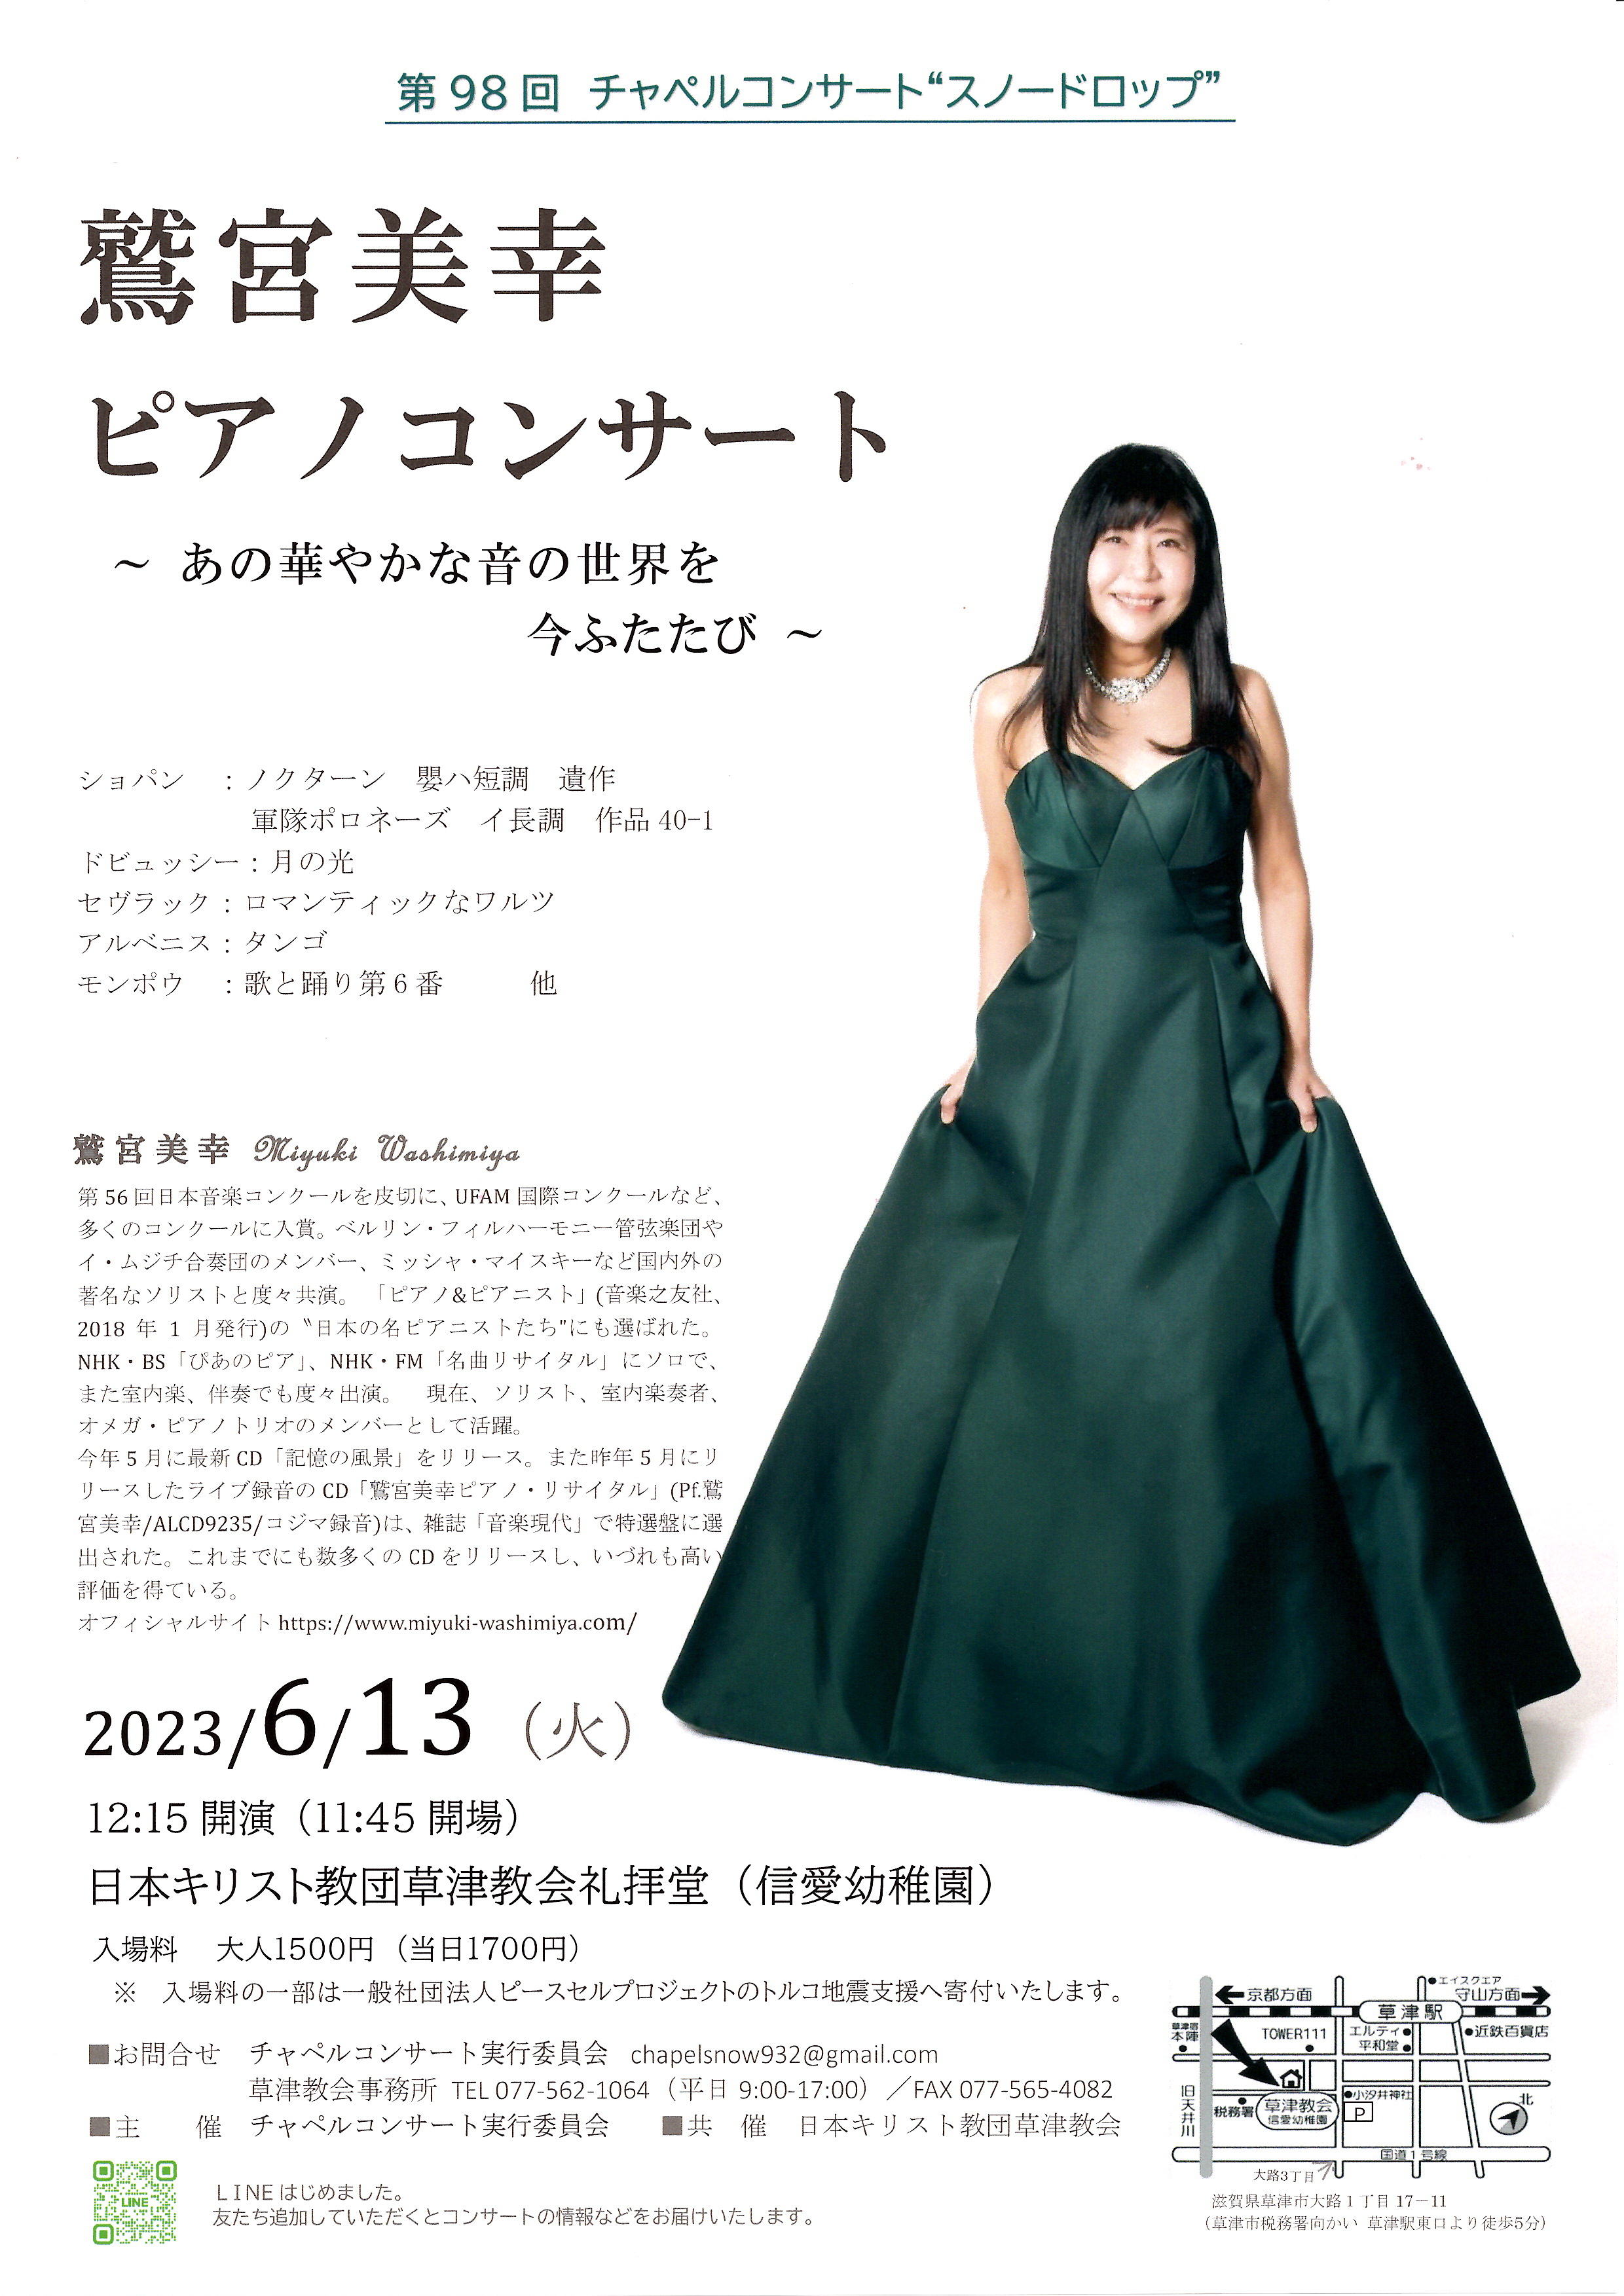 2023年6月13日「鷲宮美幸ピアノコンサート」のポスター